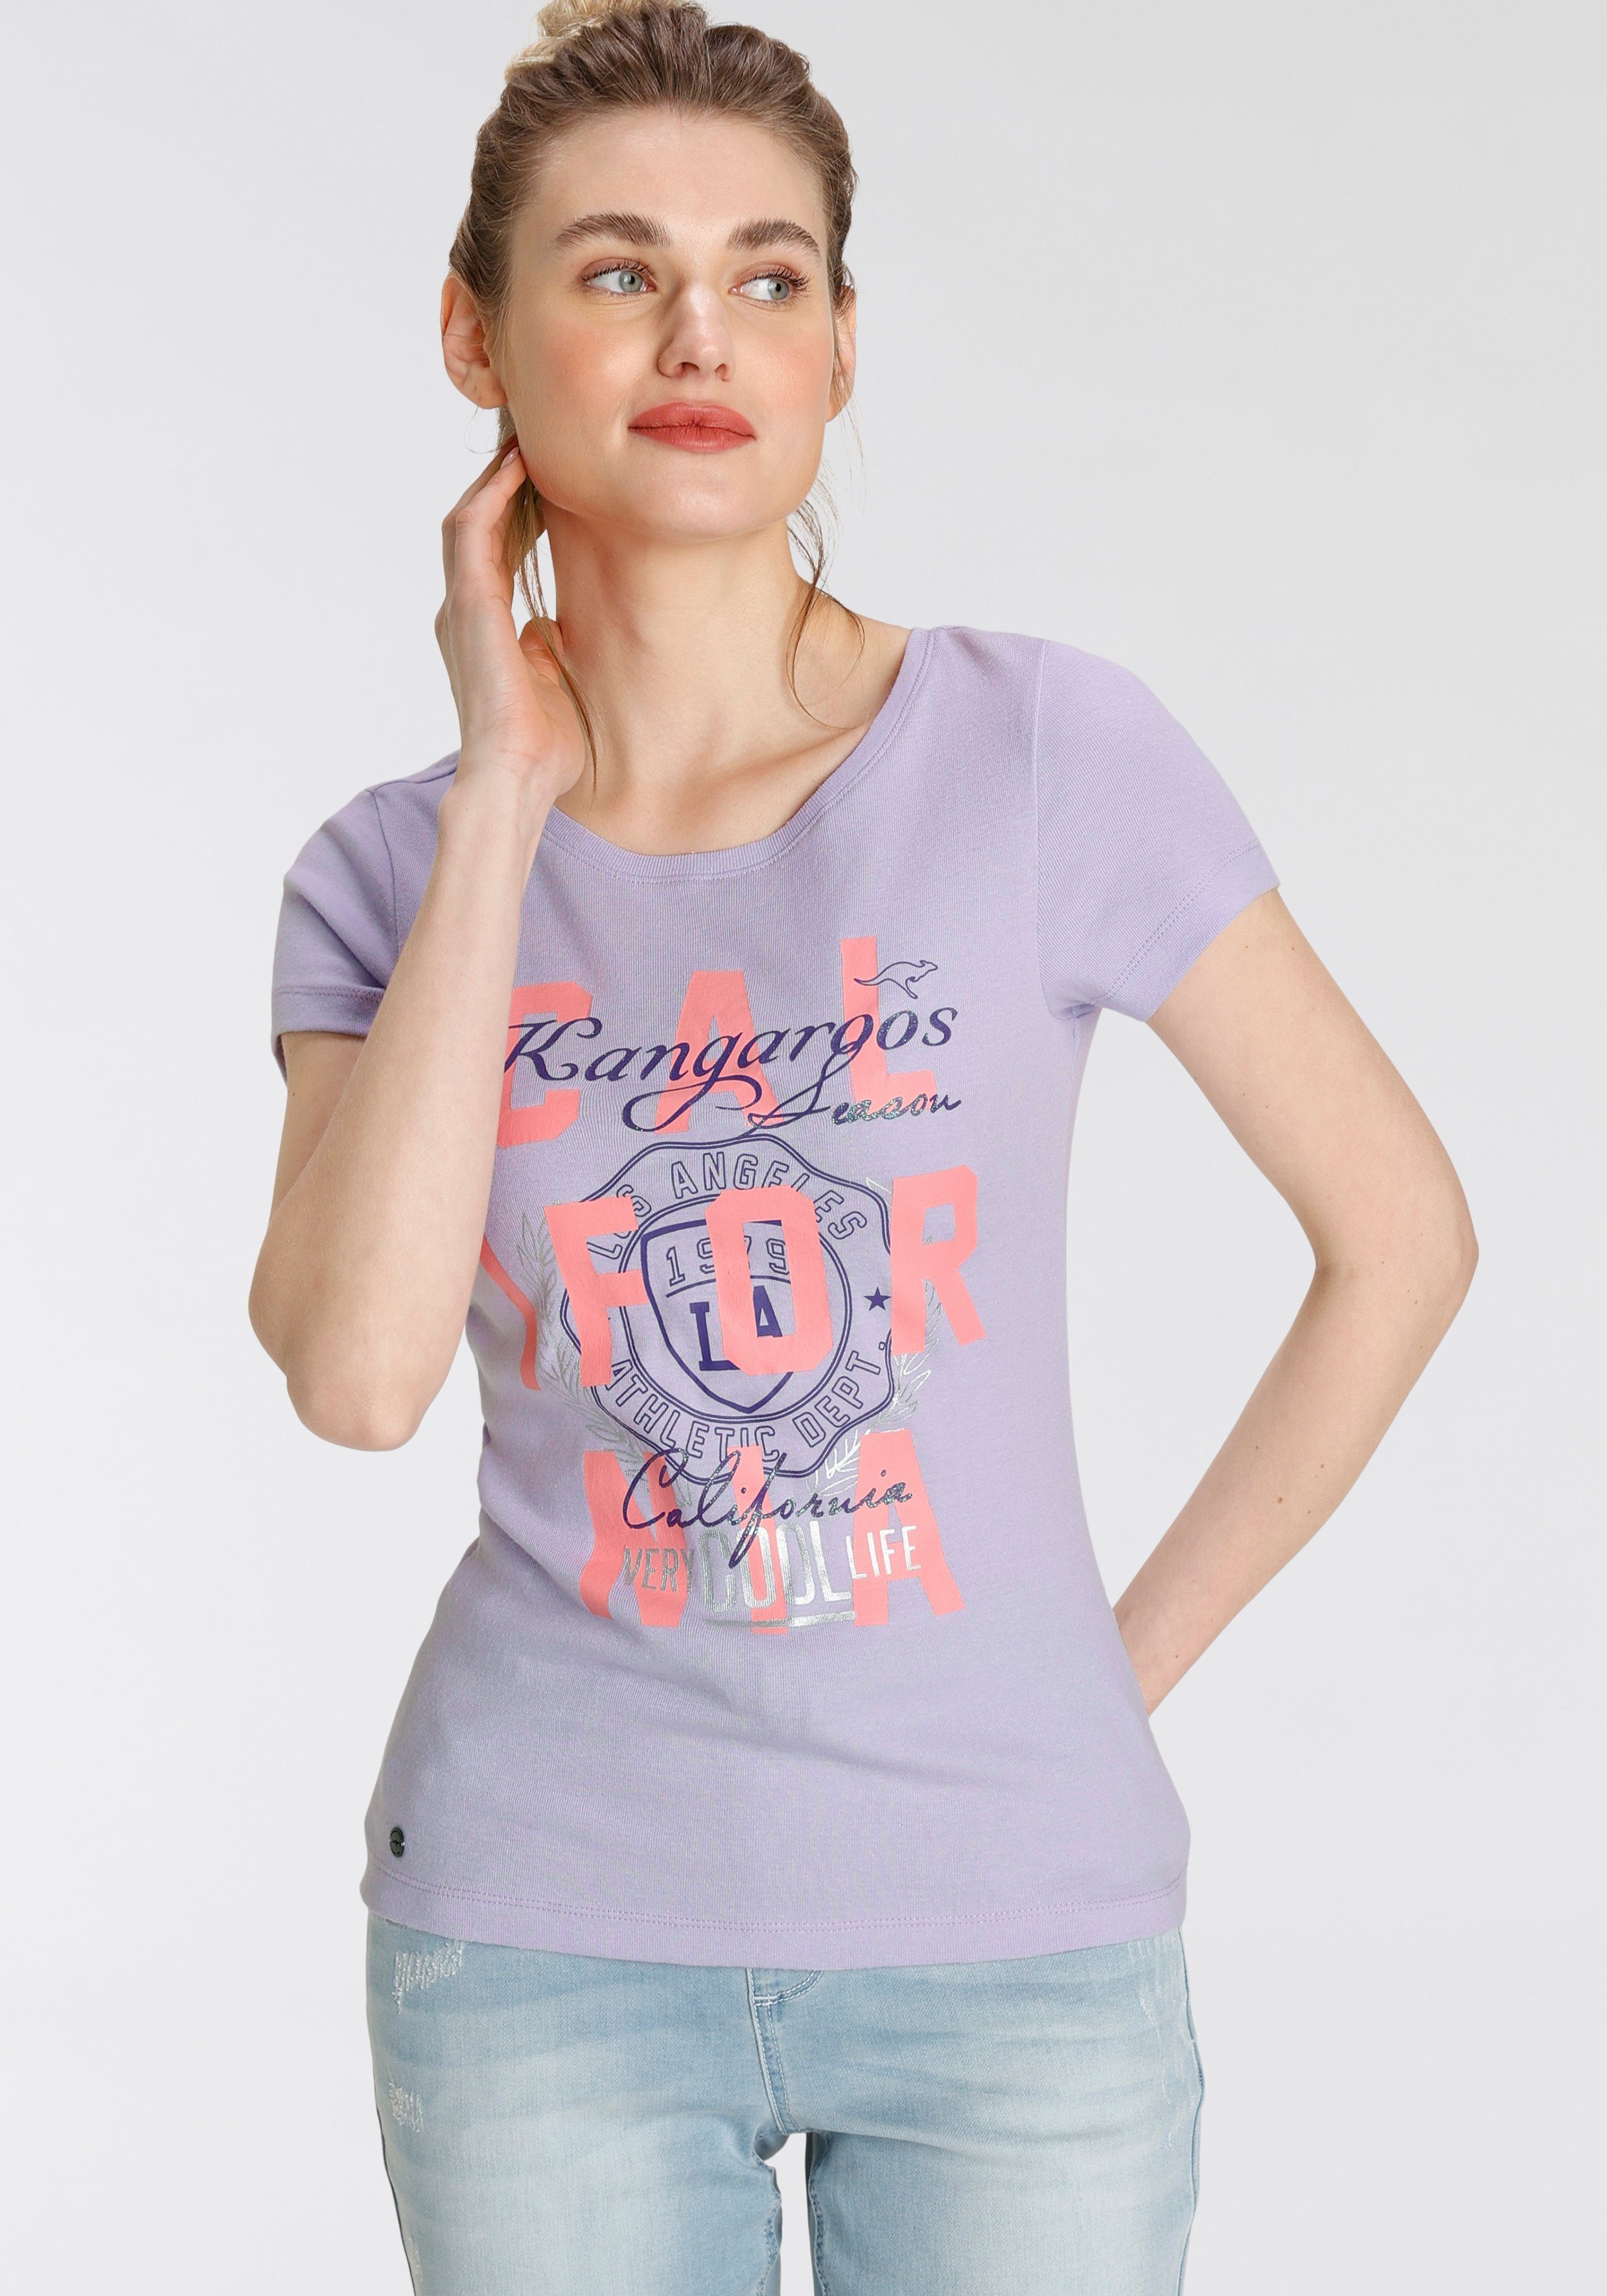 KangaROOS Print-Shirt mit Logodruck - California-Style NEUE KOLLEKTION im